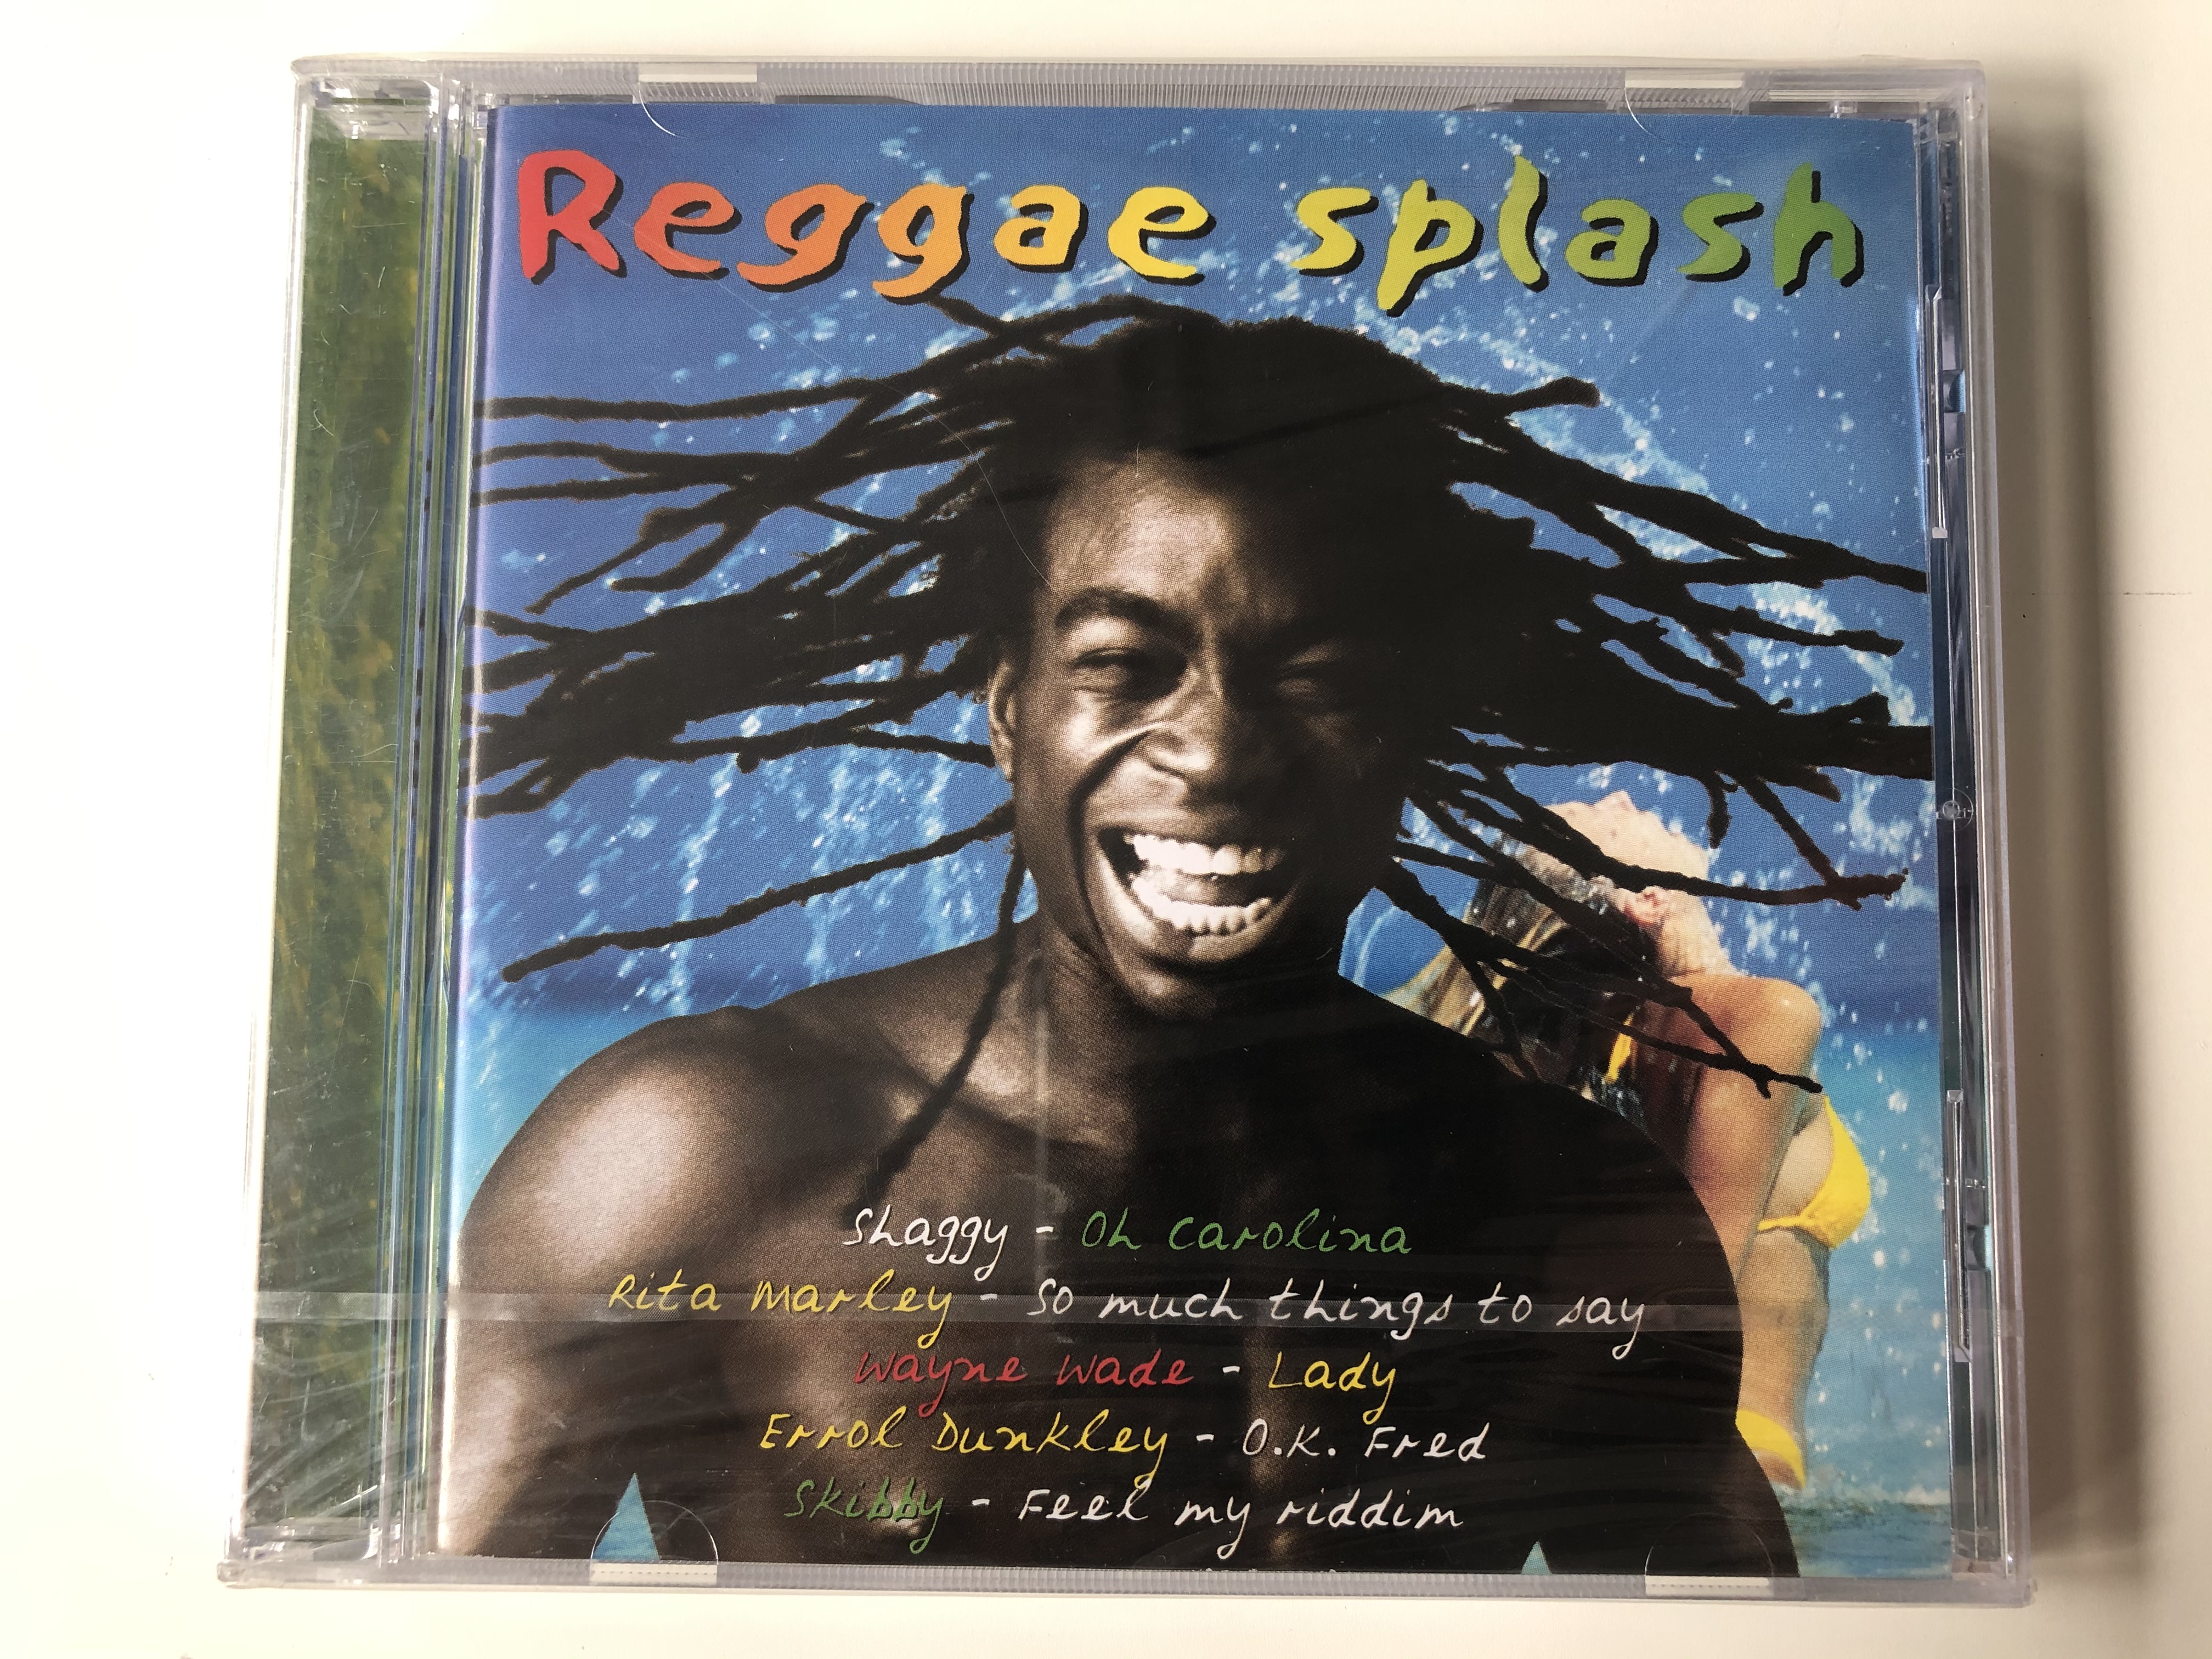 reggae-splash-shaggy-oh-carolina-rita-marley-so-much-things-to-say-wayne-wade-lady-errol-dunkley-ok-fred-skibby-feel-my-riddim-disky-audio-cd-1999-dc-859082-1-.jpg